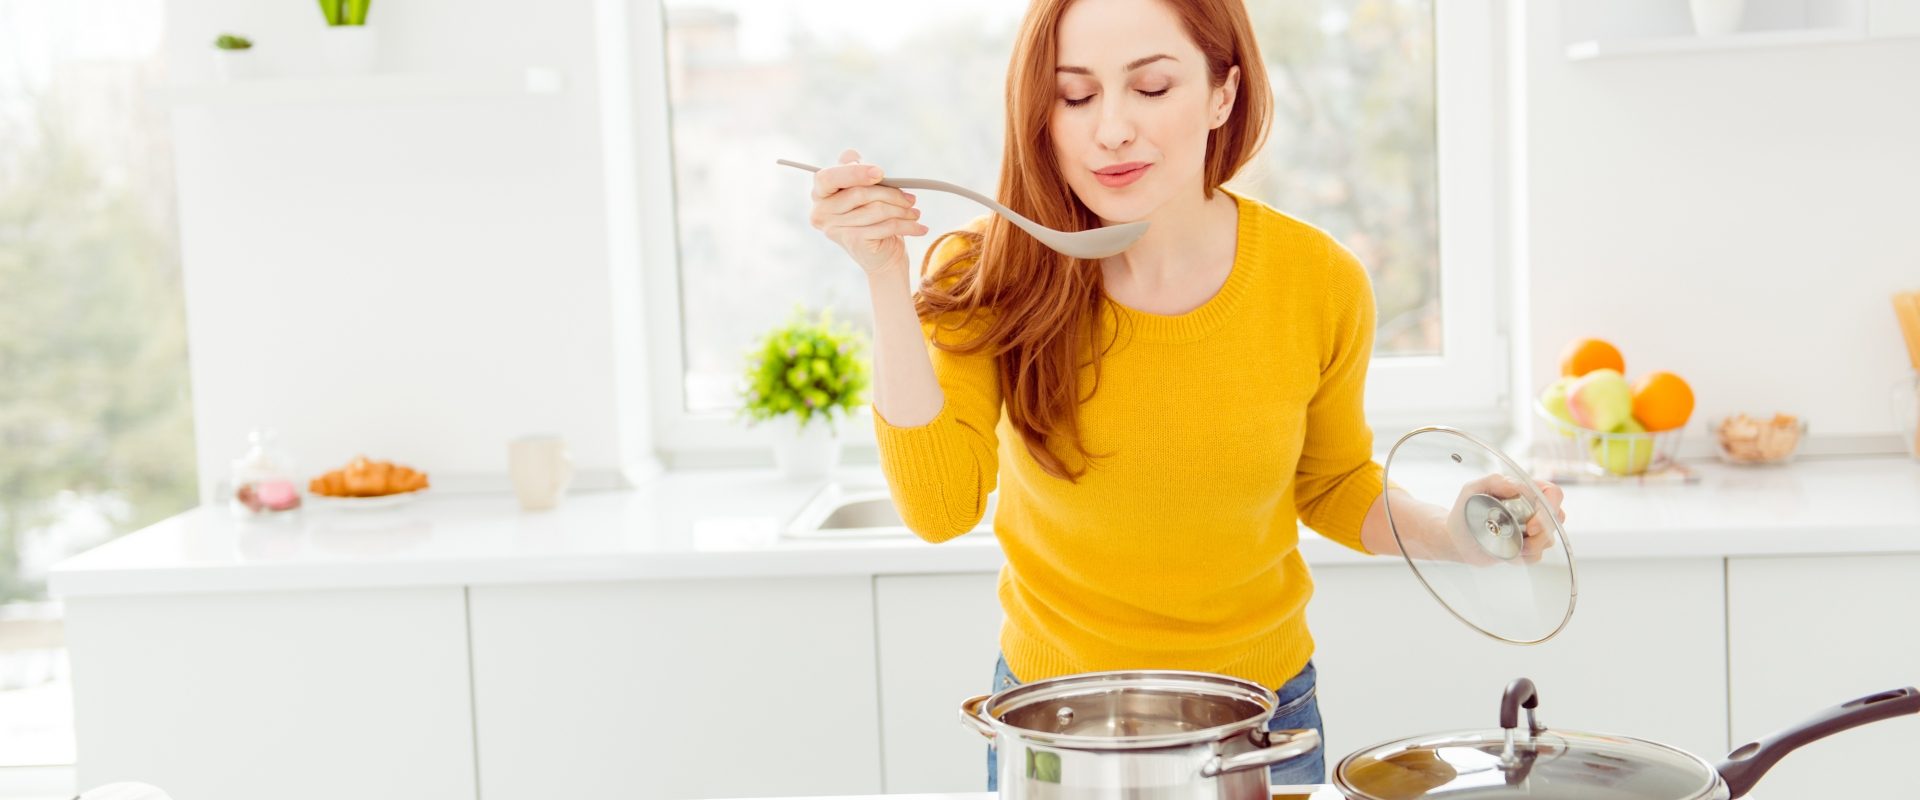 Dieta na alergię. Co powinni jeść alergicy? Rudowłosa kobieta w żółtym sweterku smakuje ugotowanej potrawy w swojej kuchni.